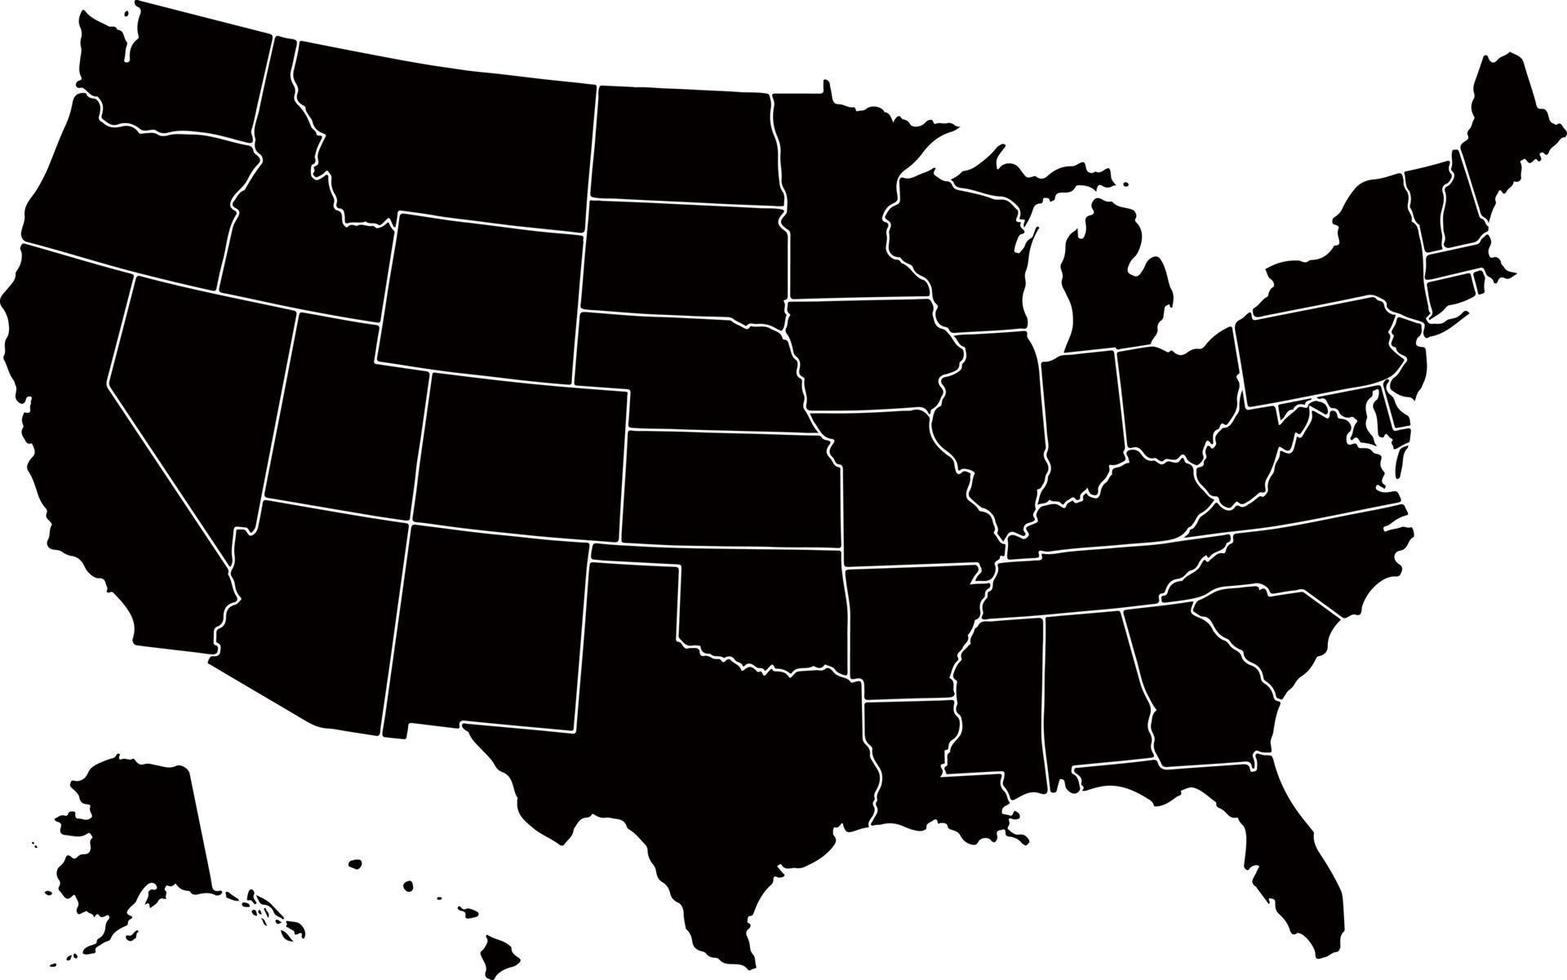 Mapa dos Estados Unidos da América de cor preta. mapa político dos eua. vetor